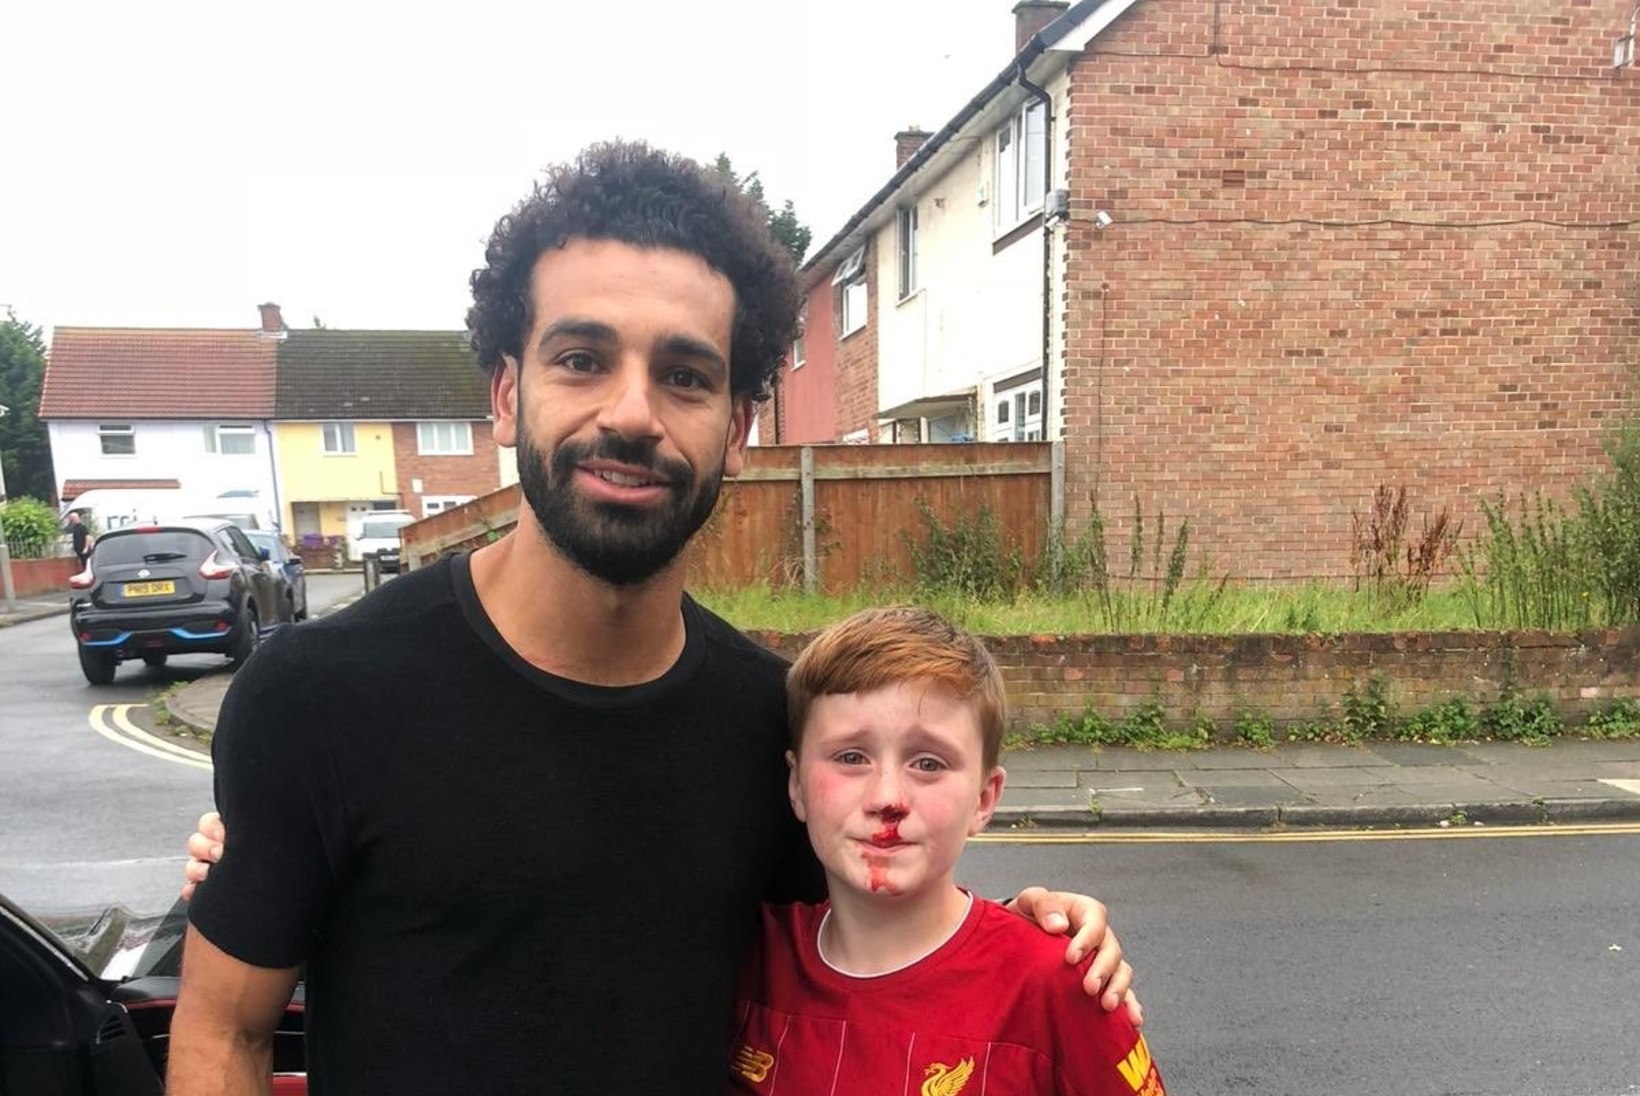 11aastane Liverpooli fänn jooksis end Salahi tähelepanu püüdes oimetuks, egiptlane vastas südamliku žestiga